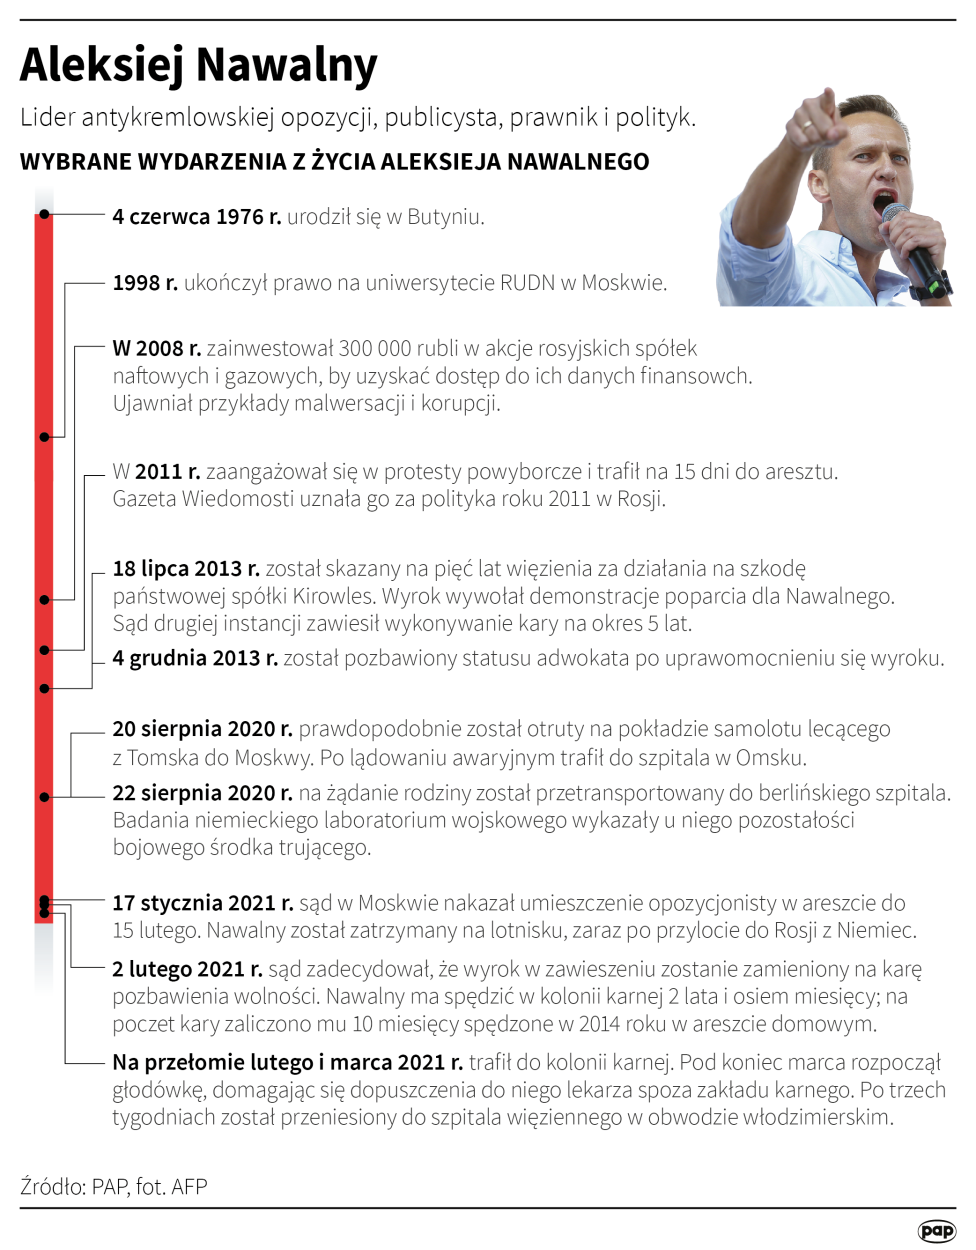 Wybrane wydarzenia z życia Aleksieja Nawalnego. Autorzy:  Maciej Zieliński , Maria Samczuk 